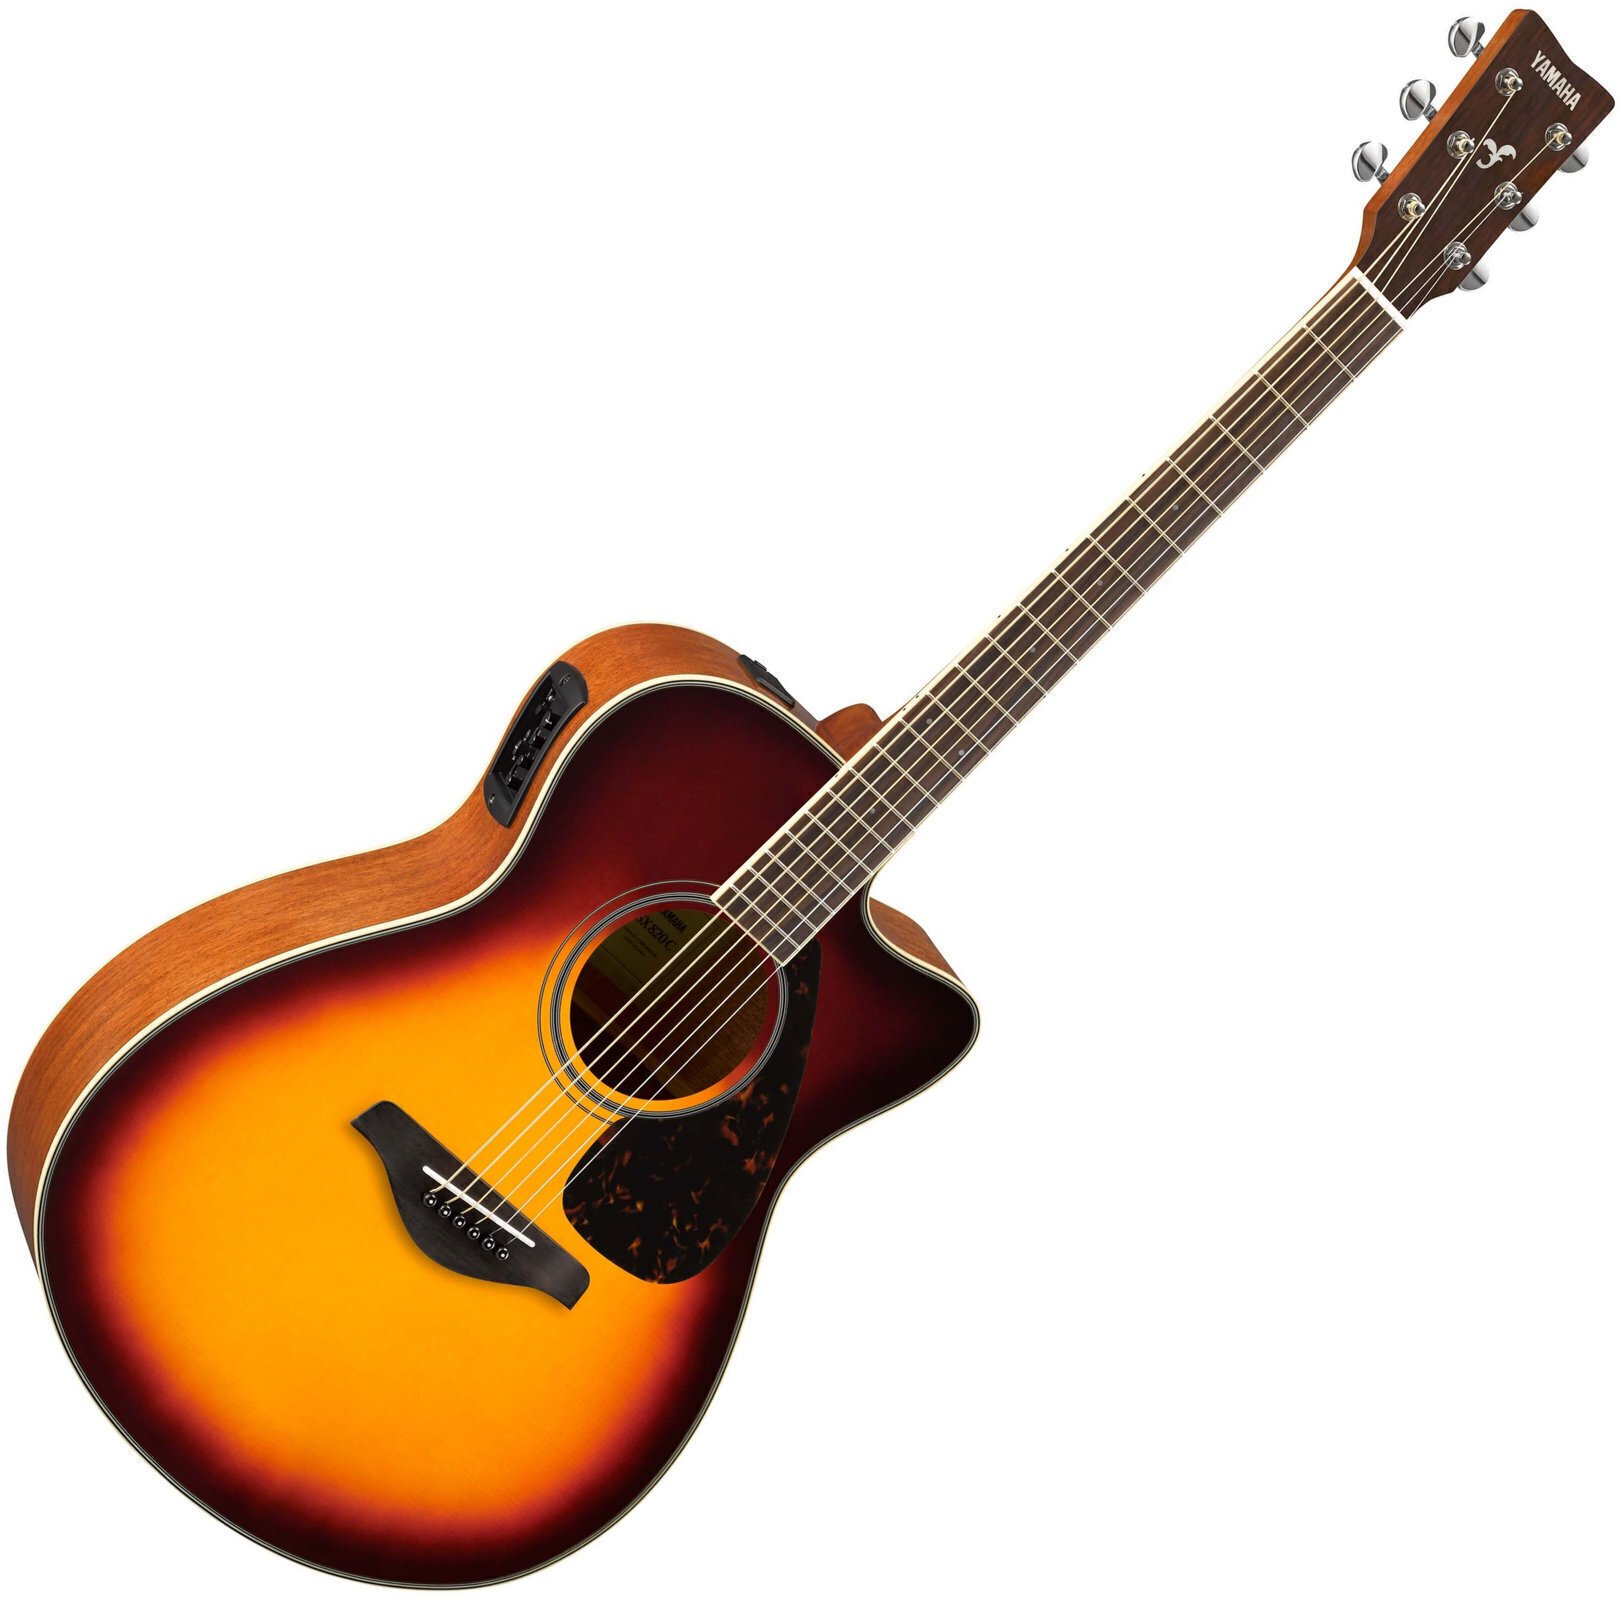 Jumbo elektro-akoestische gitaar Yamaha FSX820CBSII Brown Sunburst